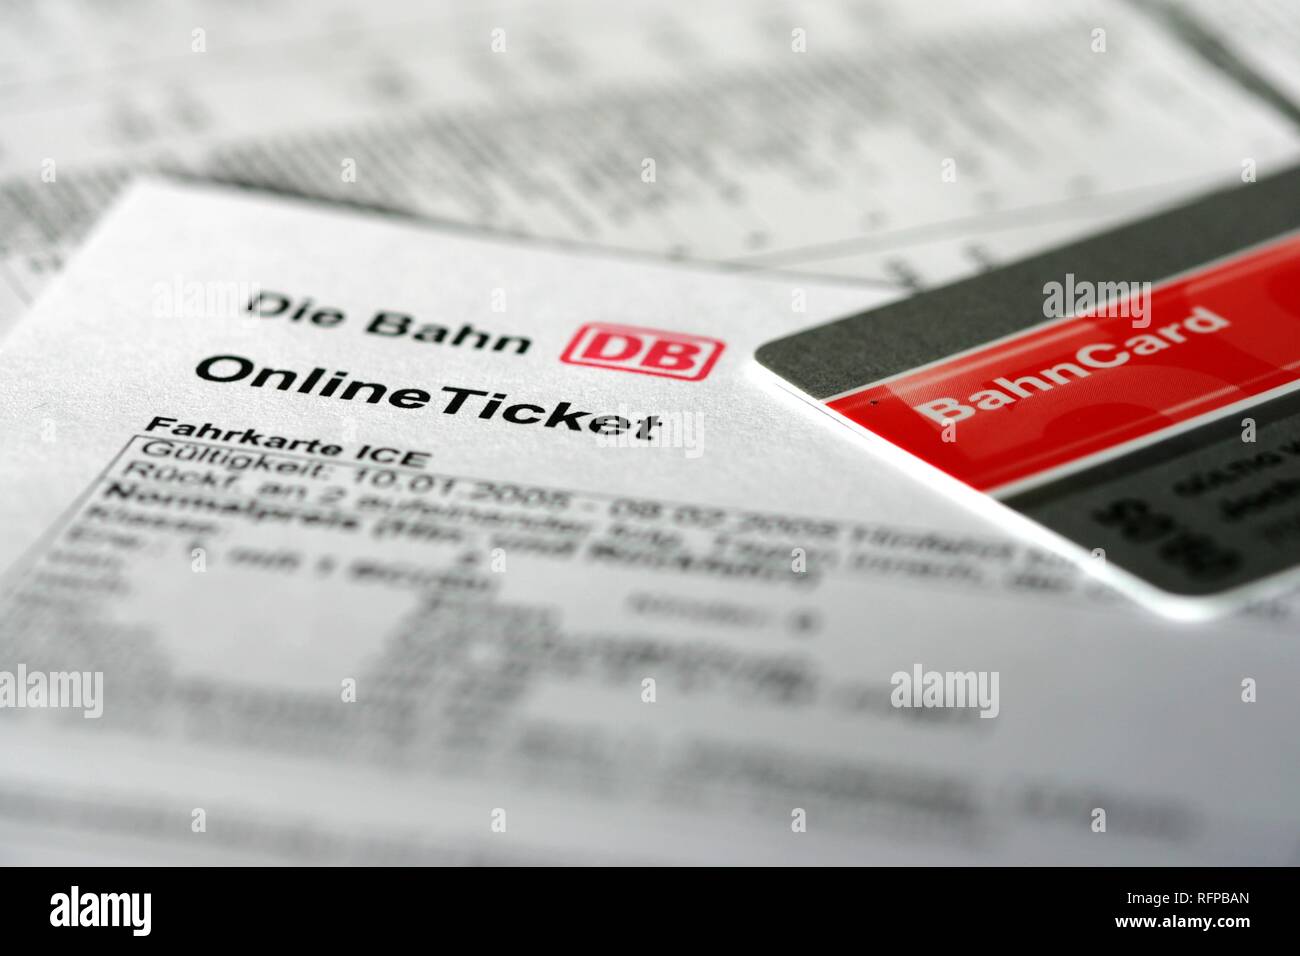 DEU, Germania : Online biglietto ferroviario. La prenotazione via internet, con uno sconto speciale carta, Bahncard. Foto Stock